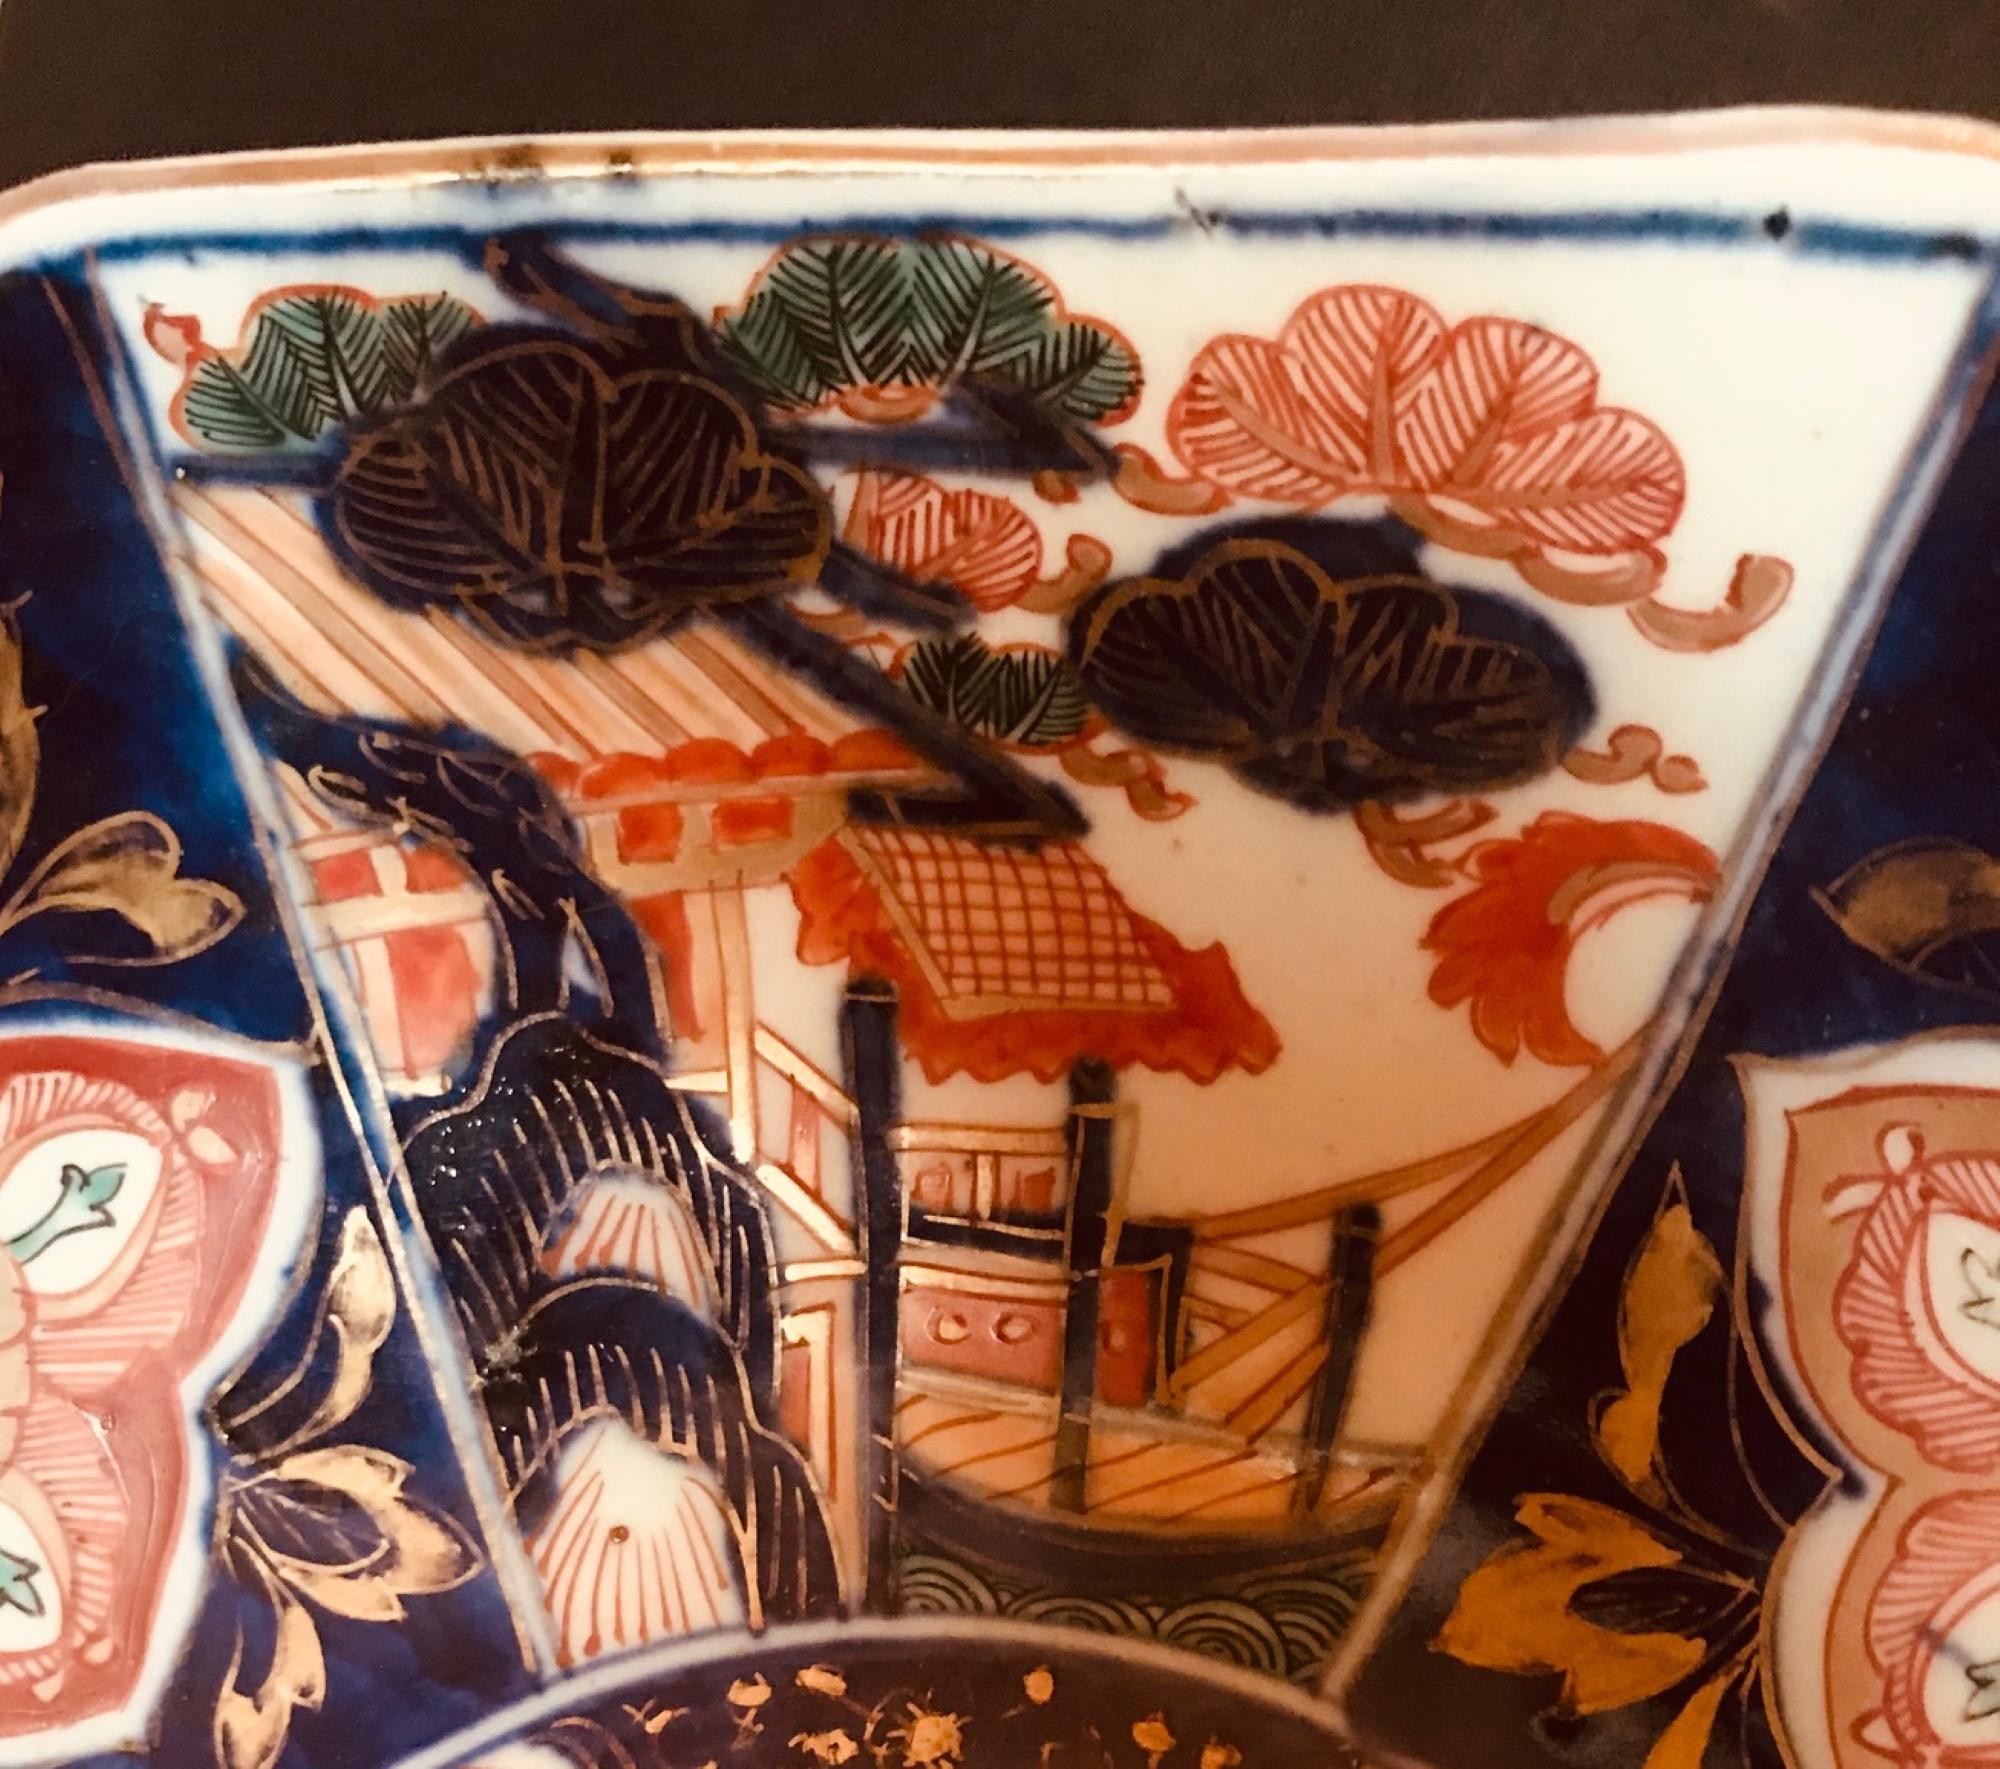 Grand bol japonais Imari d'époque Meiji, centre de table

Ce grand bol octogonal en porcelaine Imari est peint en bleu foncé, cuivre, orange, rouge et vert. Sa structure élégante et géométrique se concentre sur une composition florale élaborée